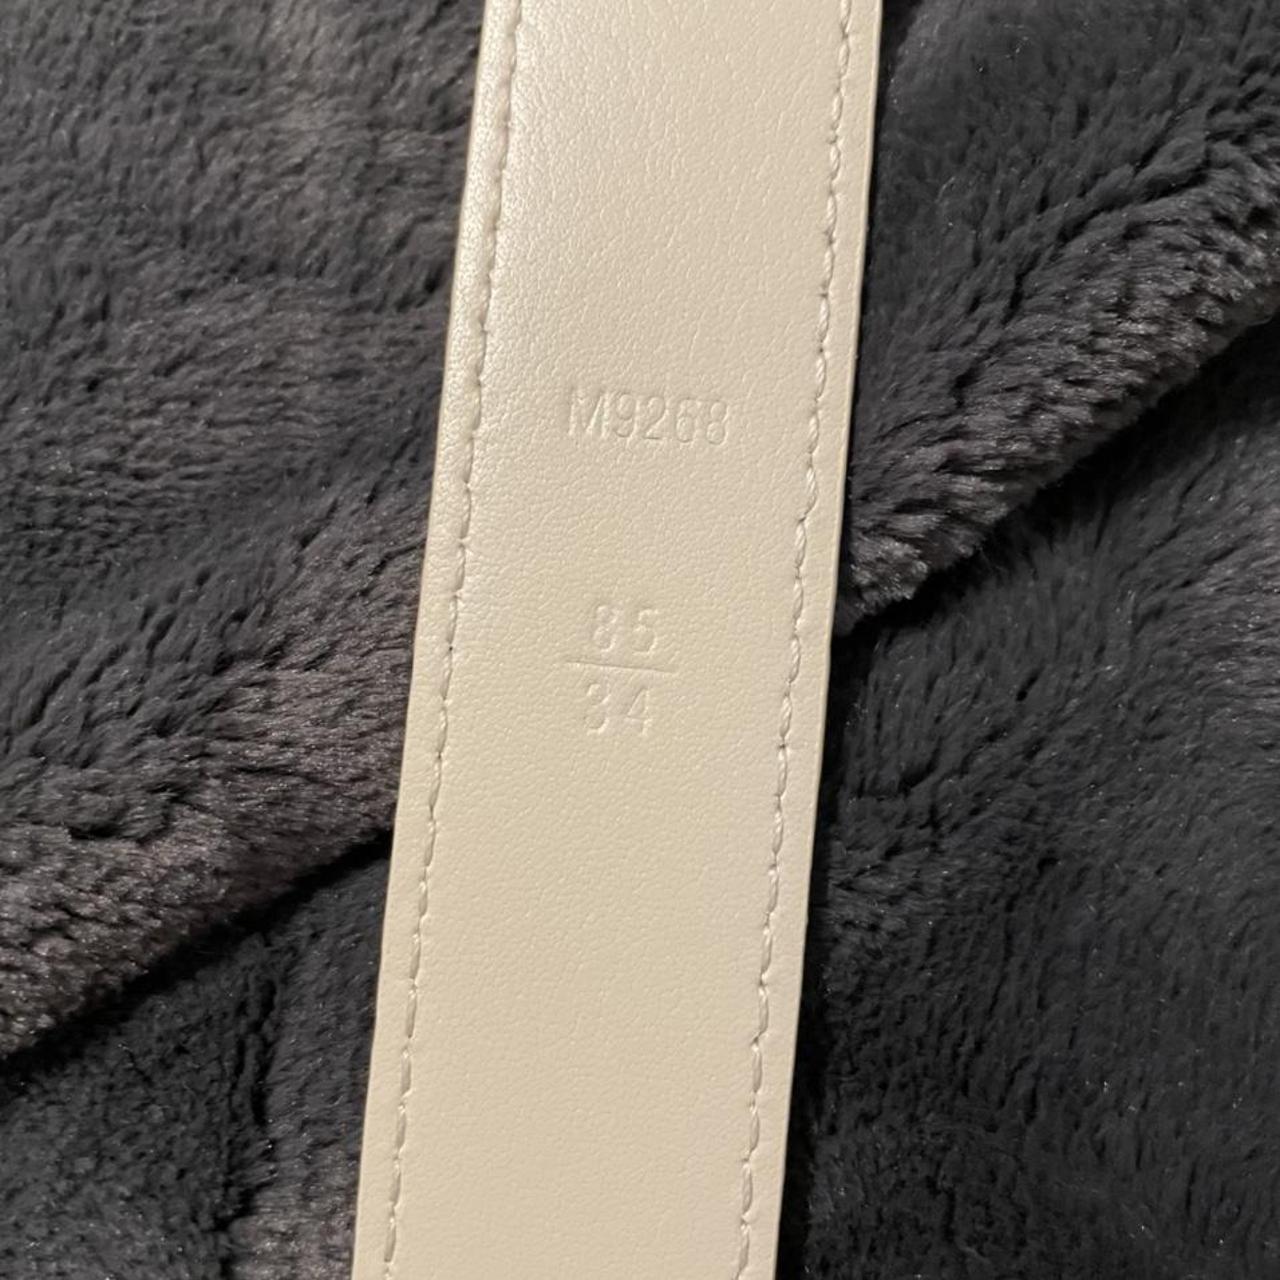 Women's Louis Vuitton belt! Rarely - Depop